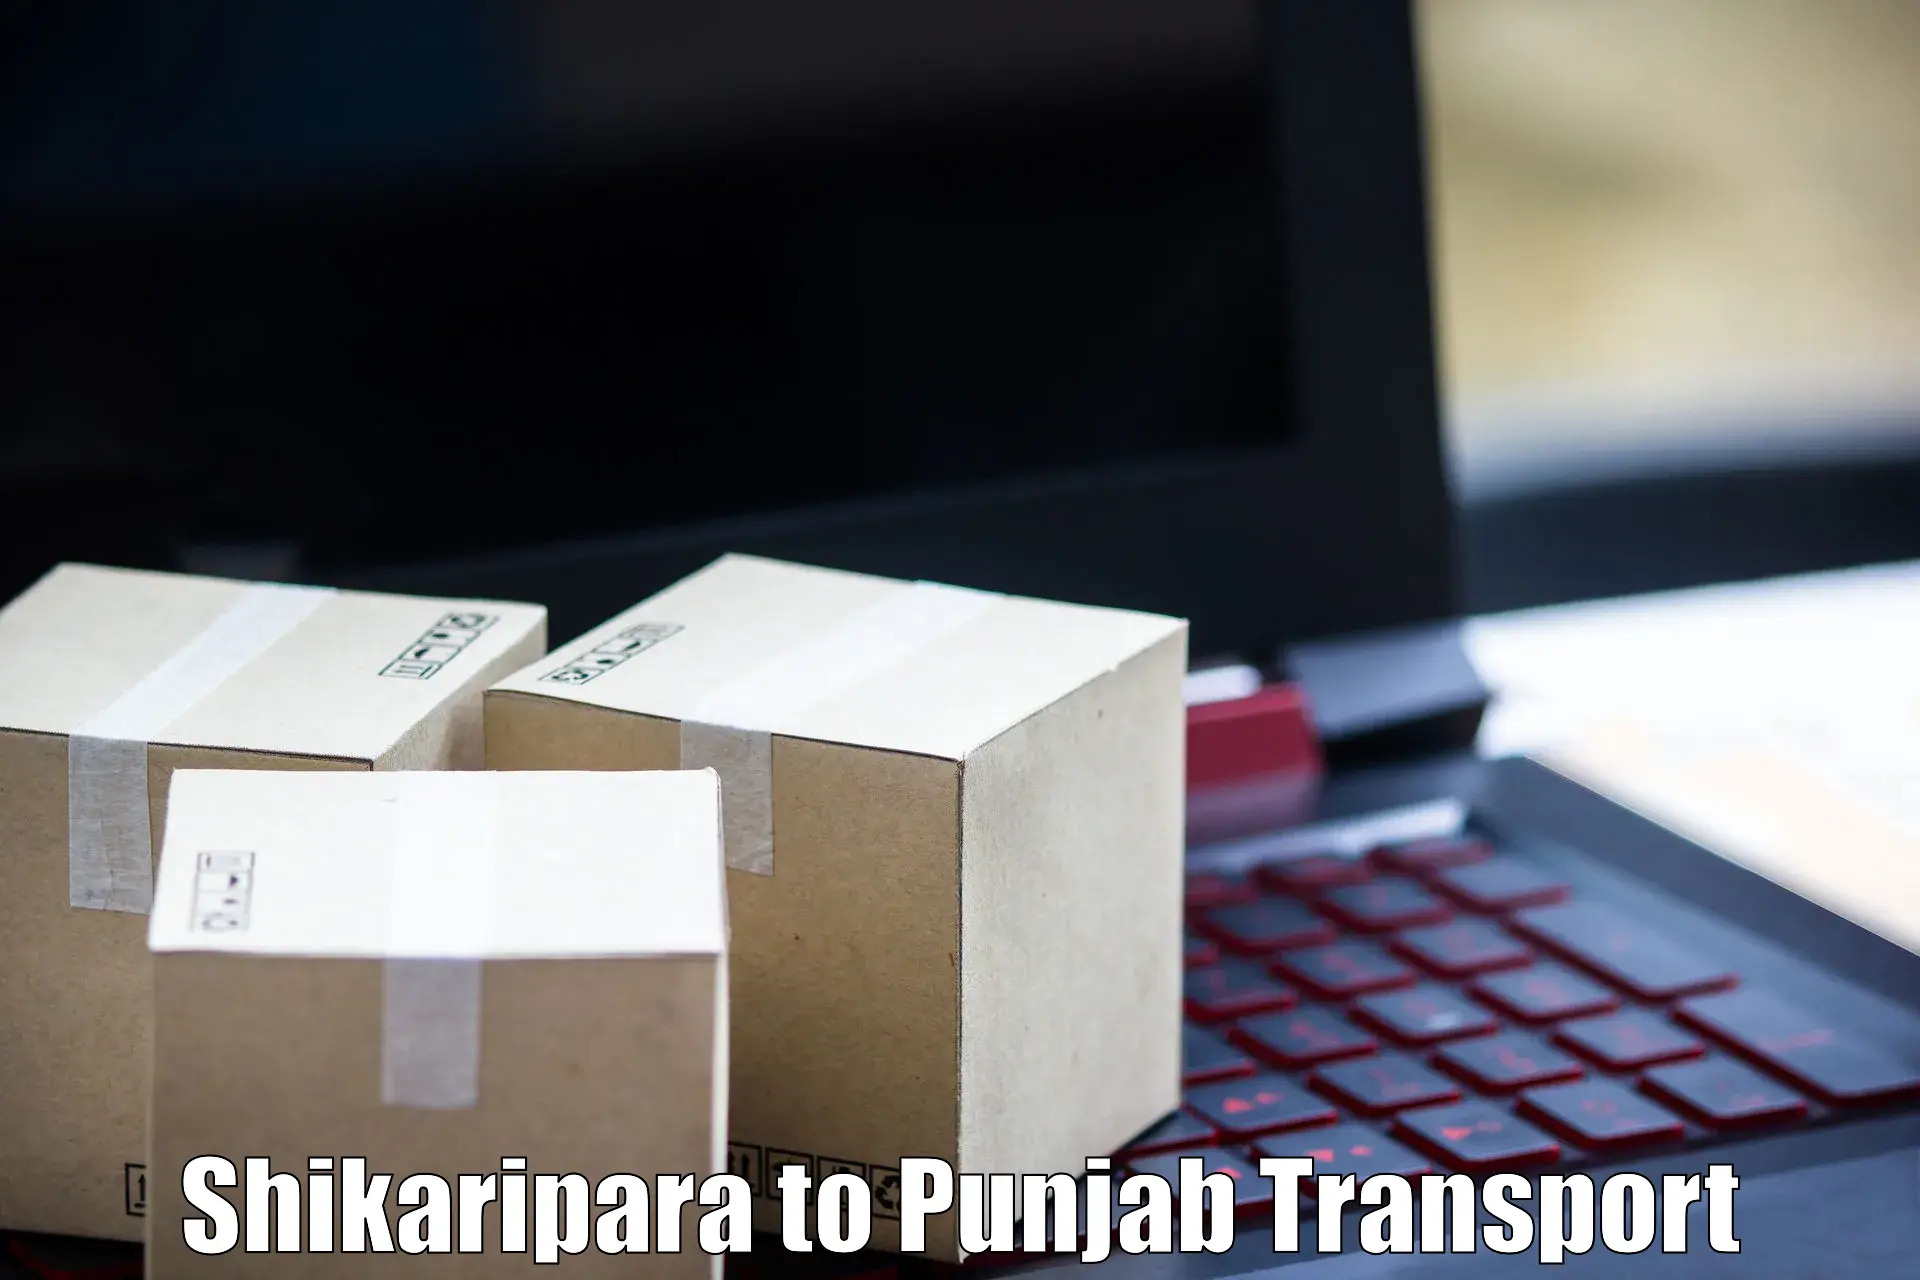 Online transport service Shikaripara to Dera Bassi